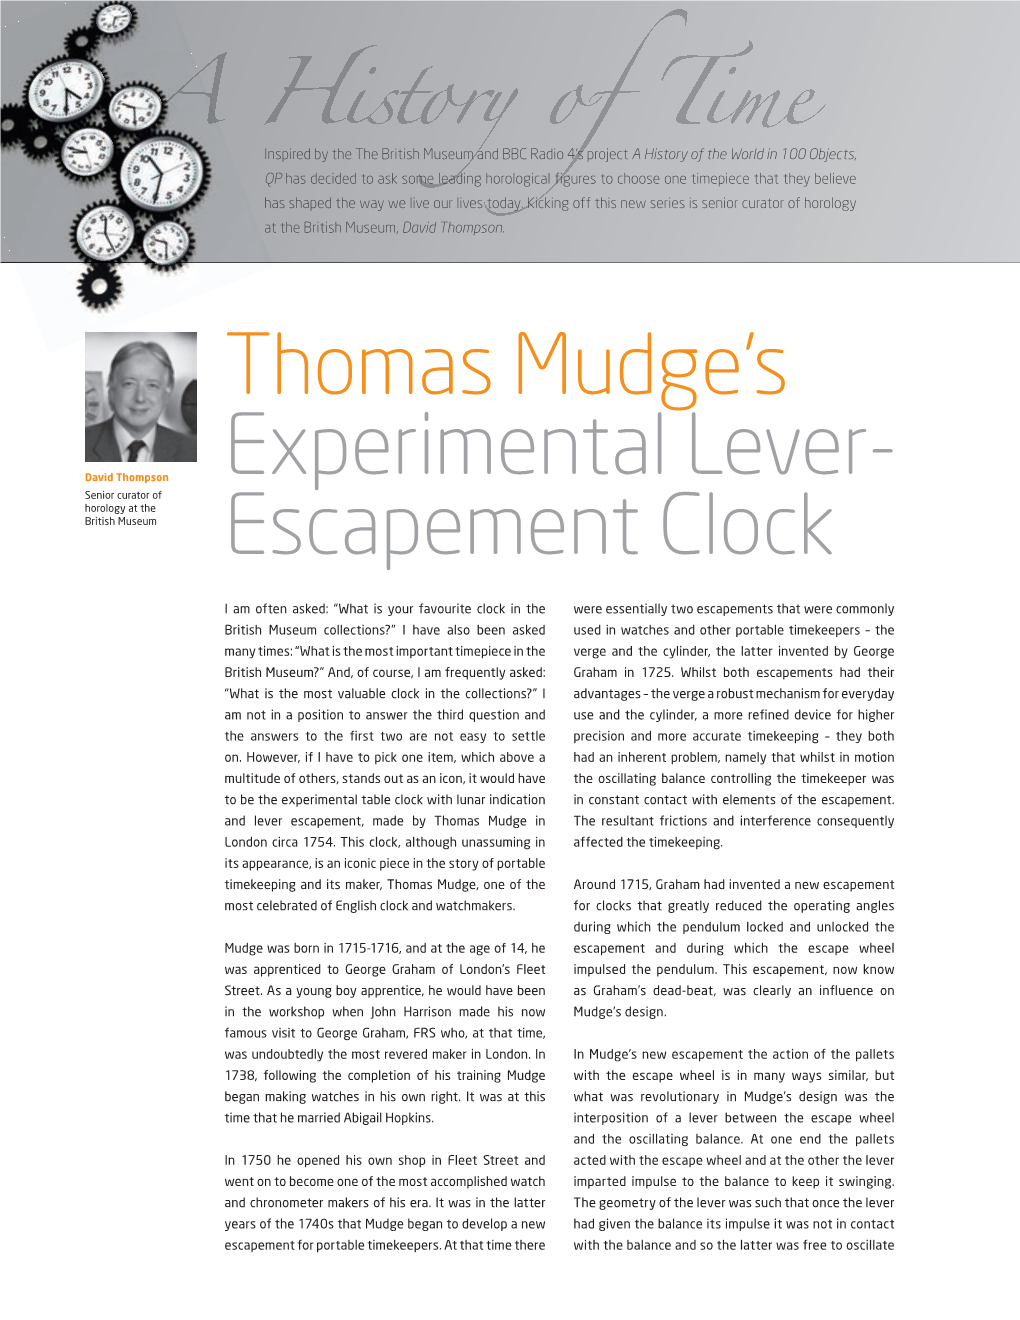 Thomas Mudge's Experimental Lever- Escapement Clock